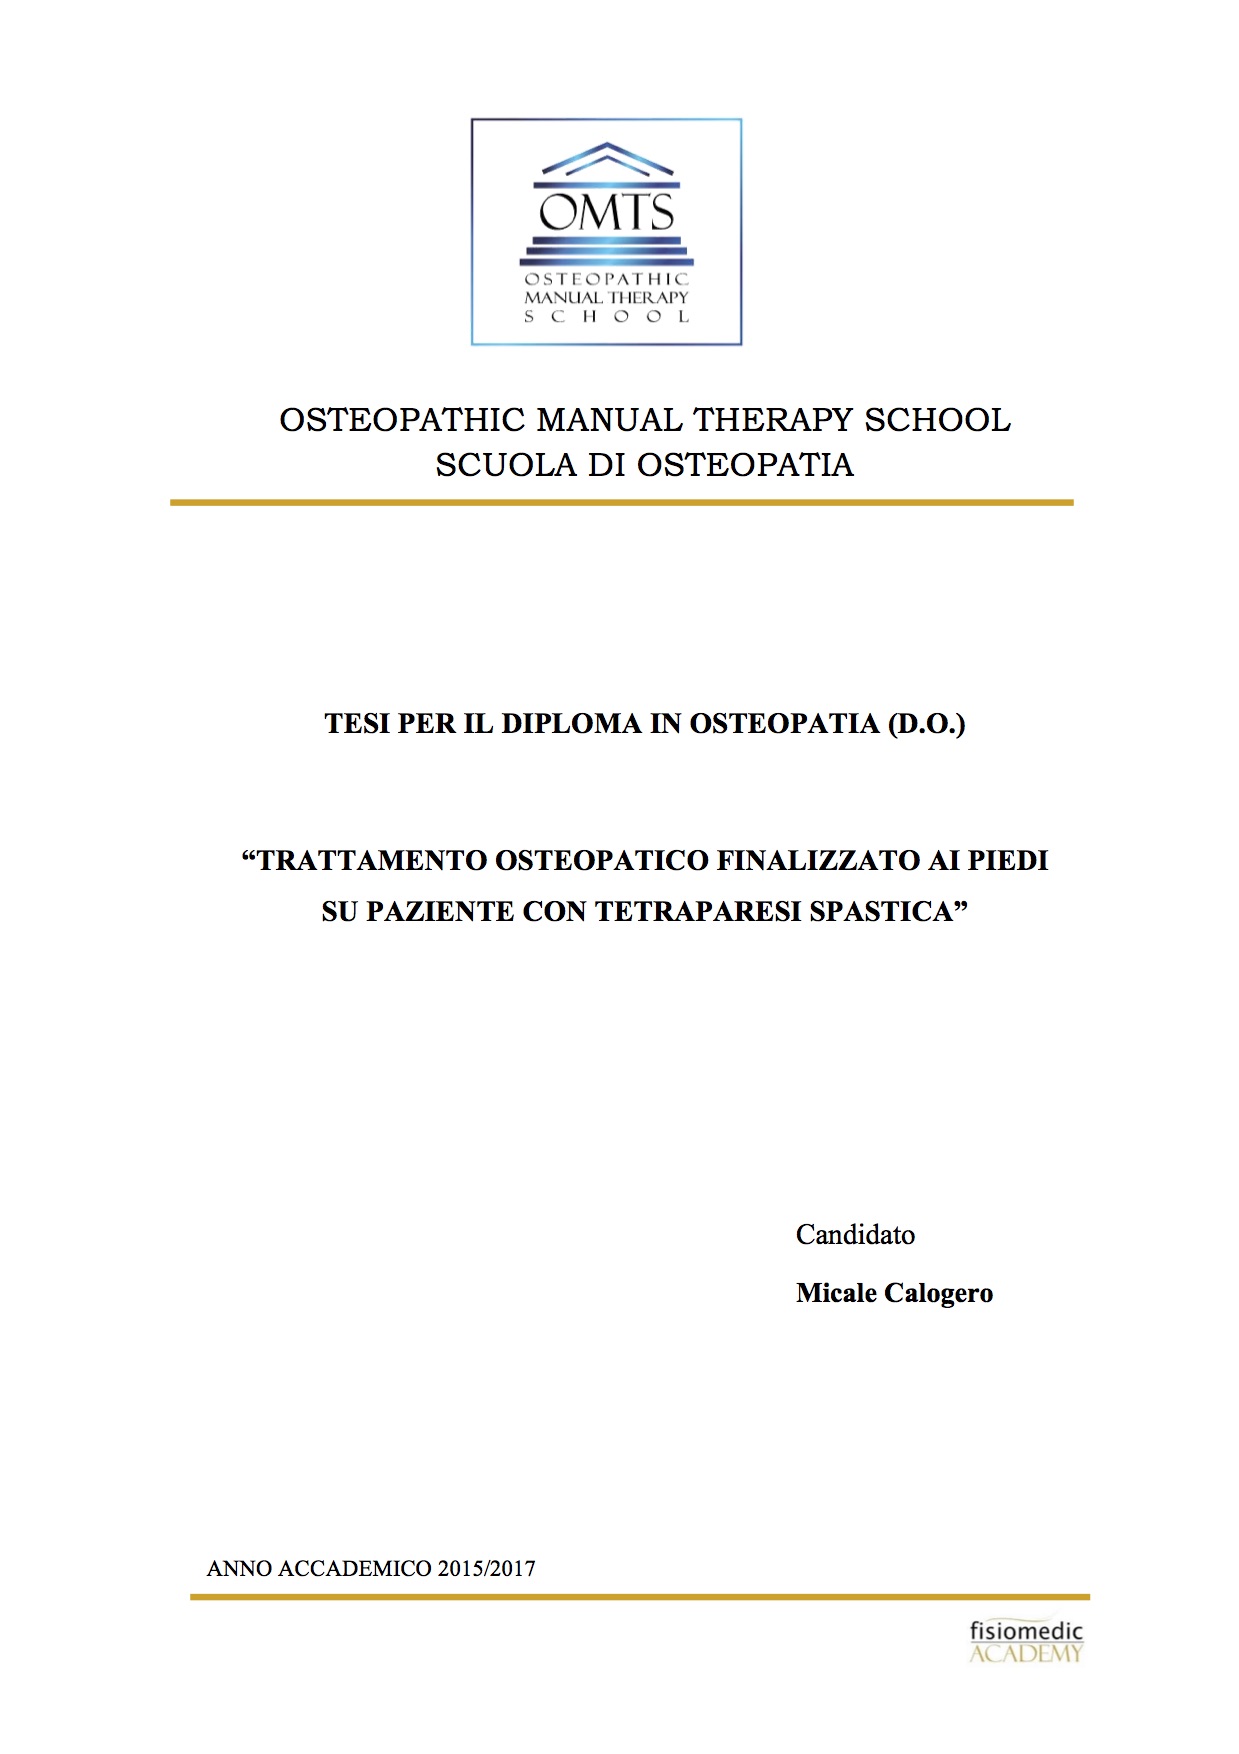 Calogero Micale Tesi Diploma Osteopatia 2017